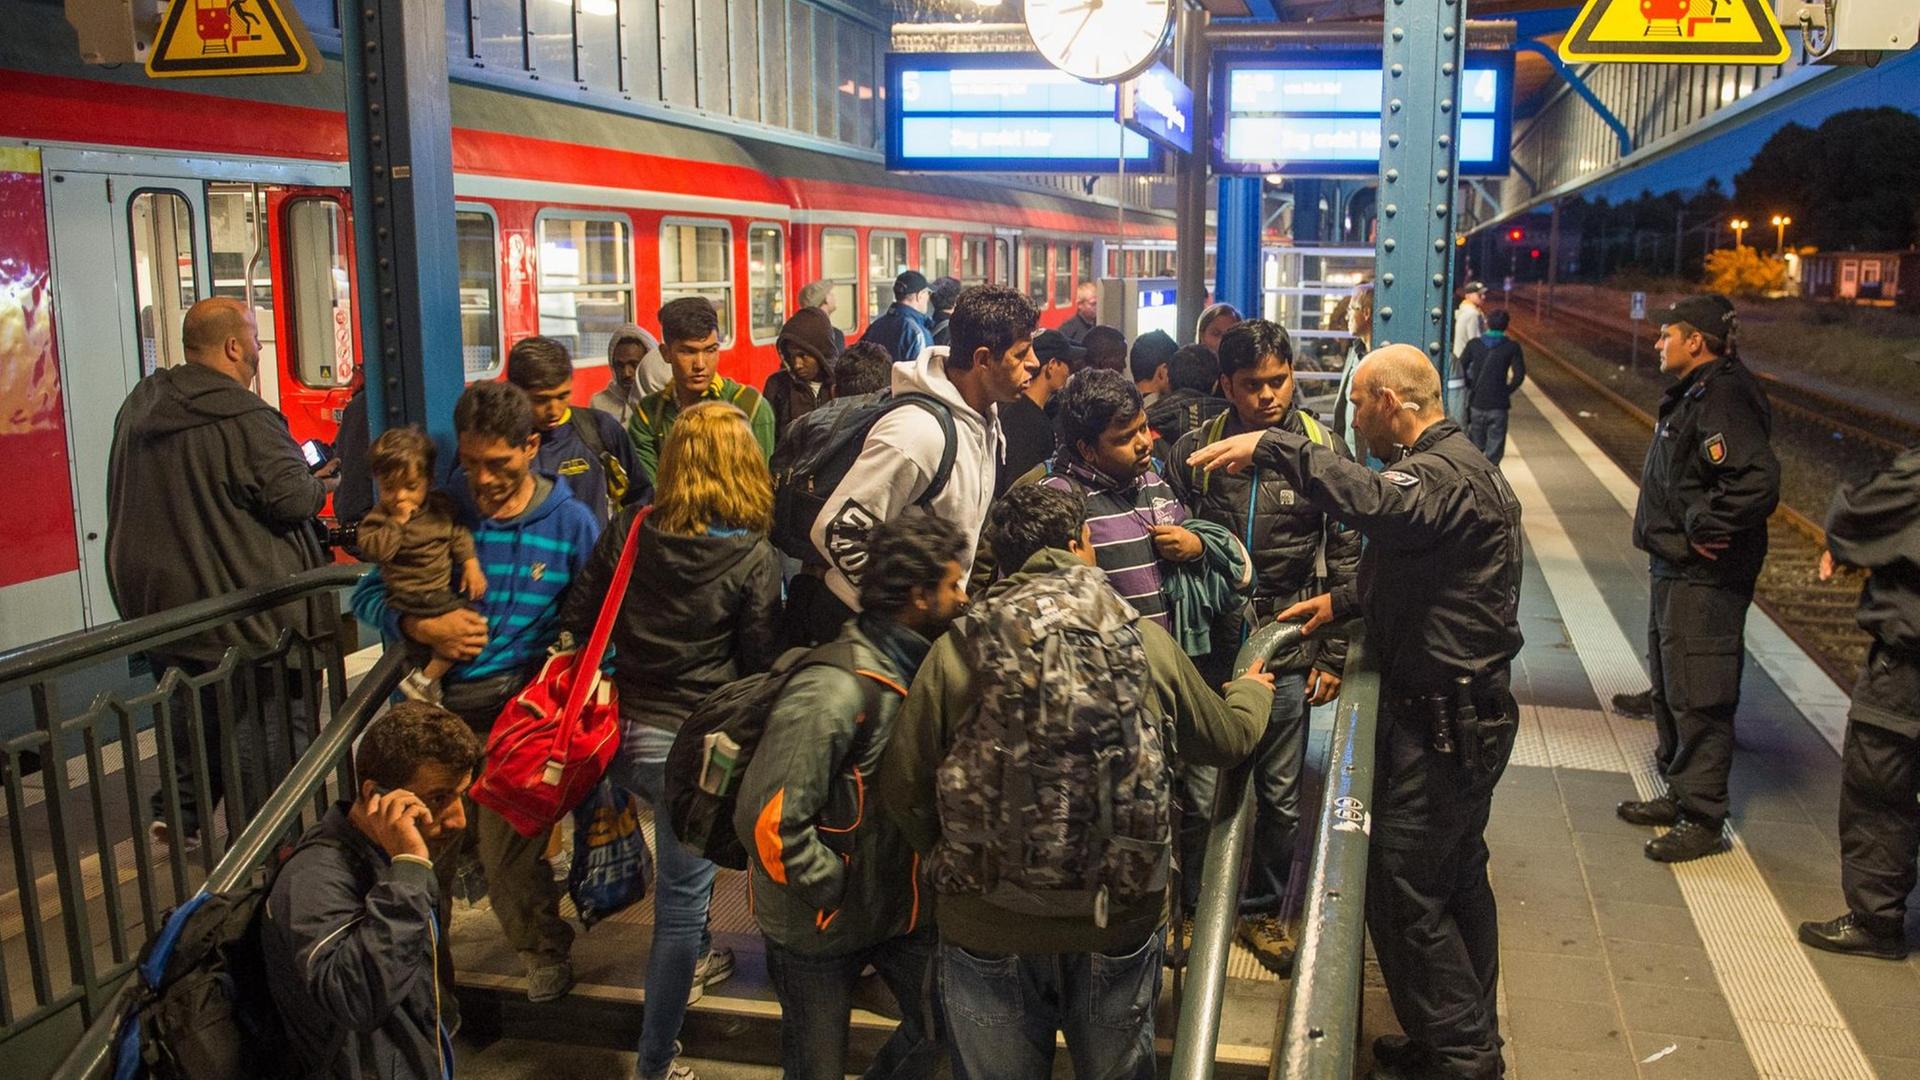 Polizisten am Bahnhof in Flensburg.Polizisten am Bahnhof in Flensburg - von dort wollten Flüchtlinge in den Zug nach Dänemark reisen.